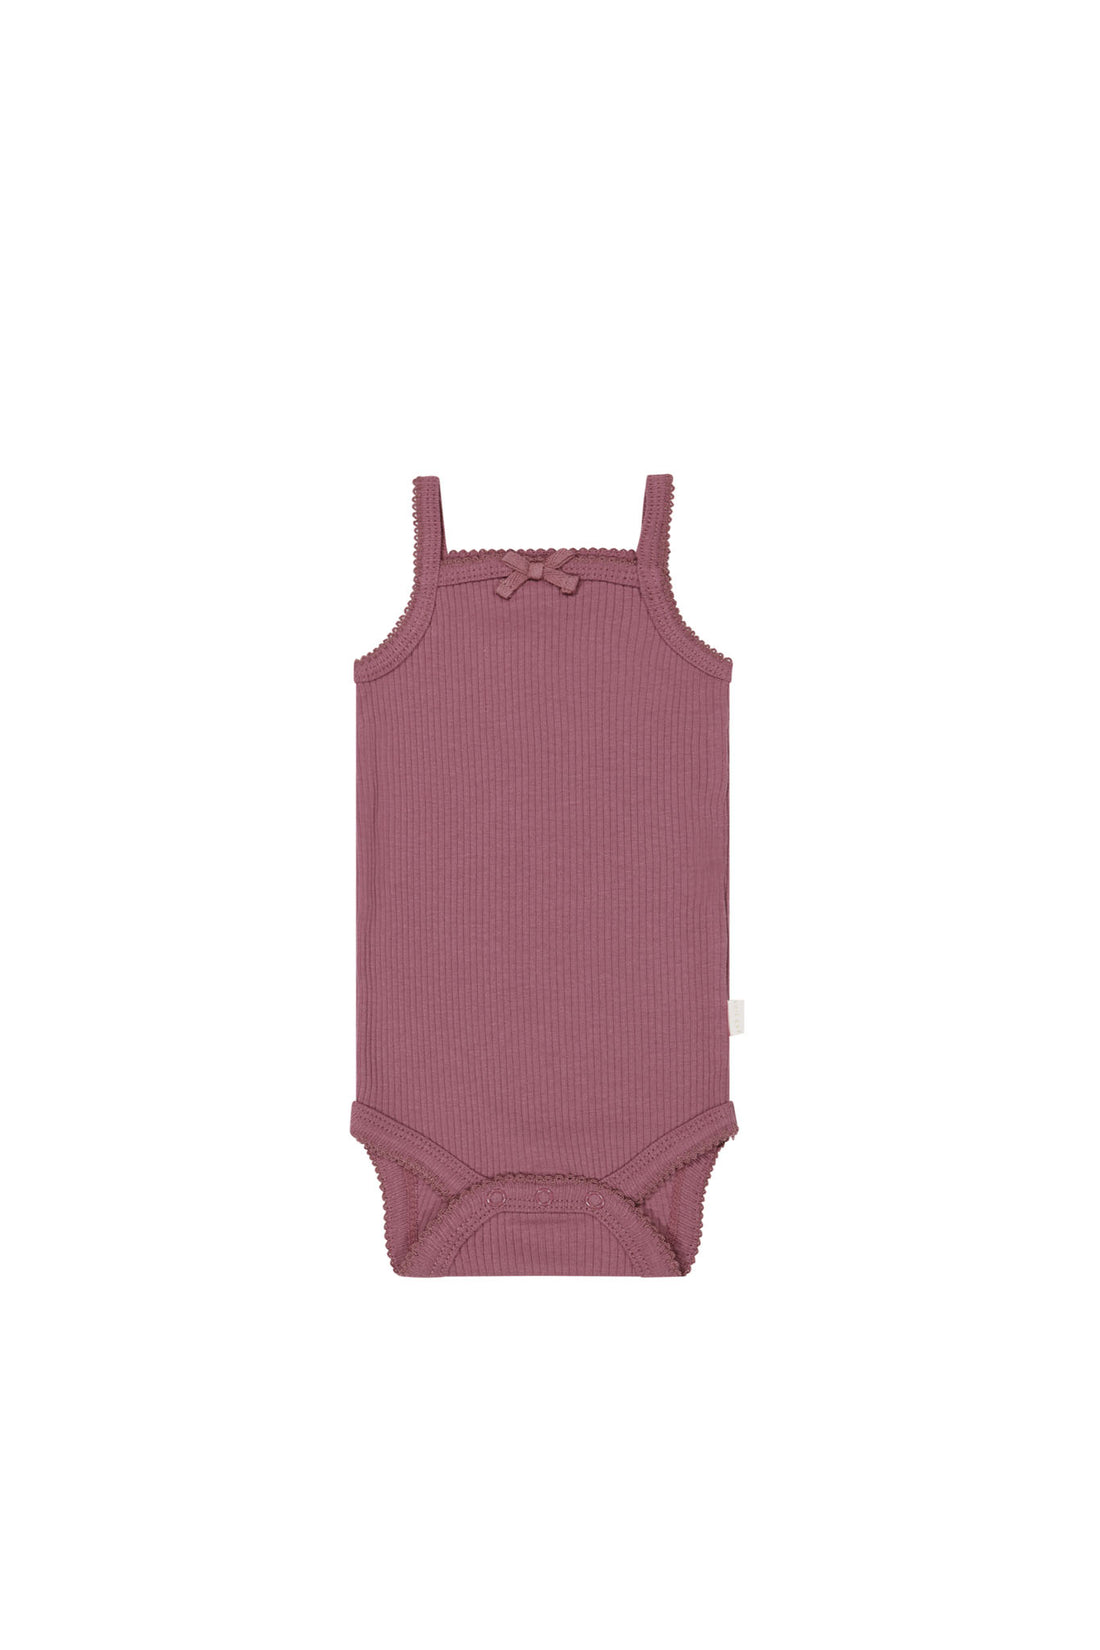 Organic Cotton Modal Singlet Bodysuit - Rosette Childrens Bodysuit from Jamie Kay NZ